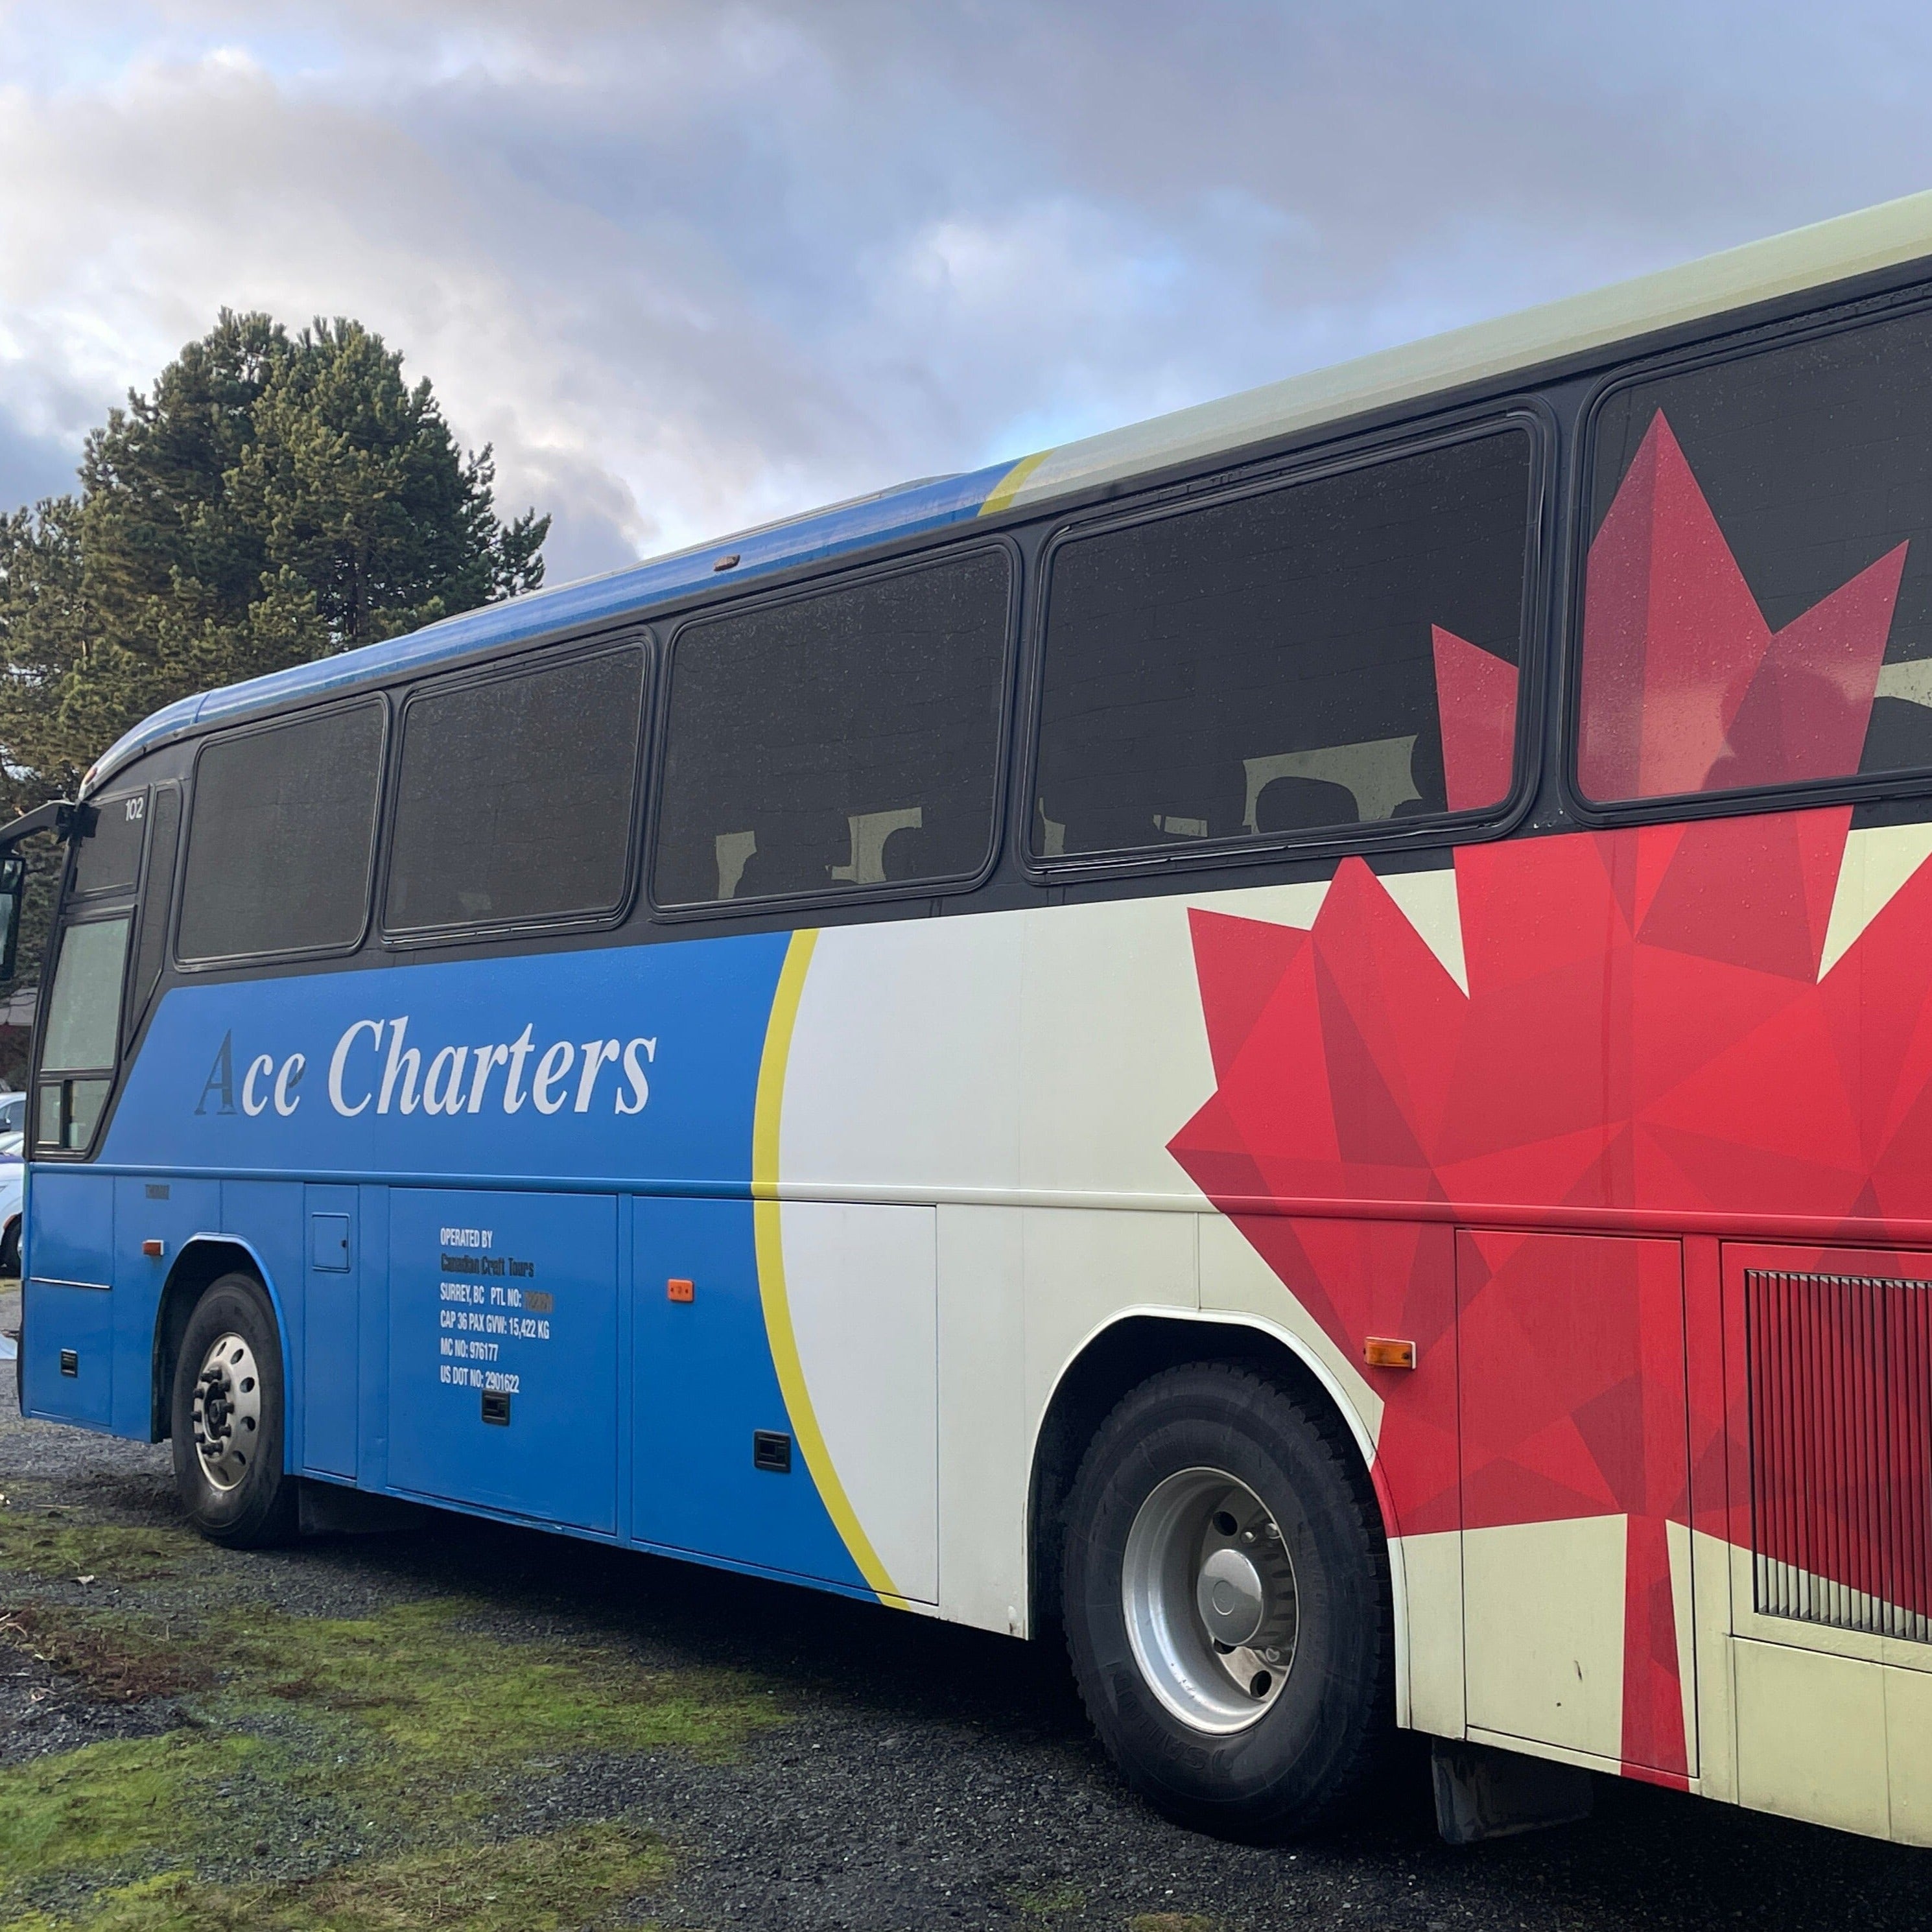 calgary bus tour companies